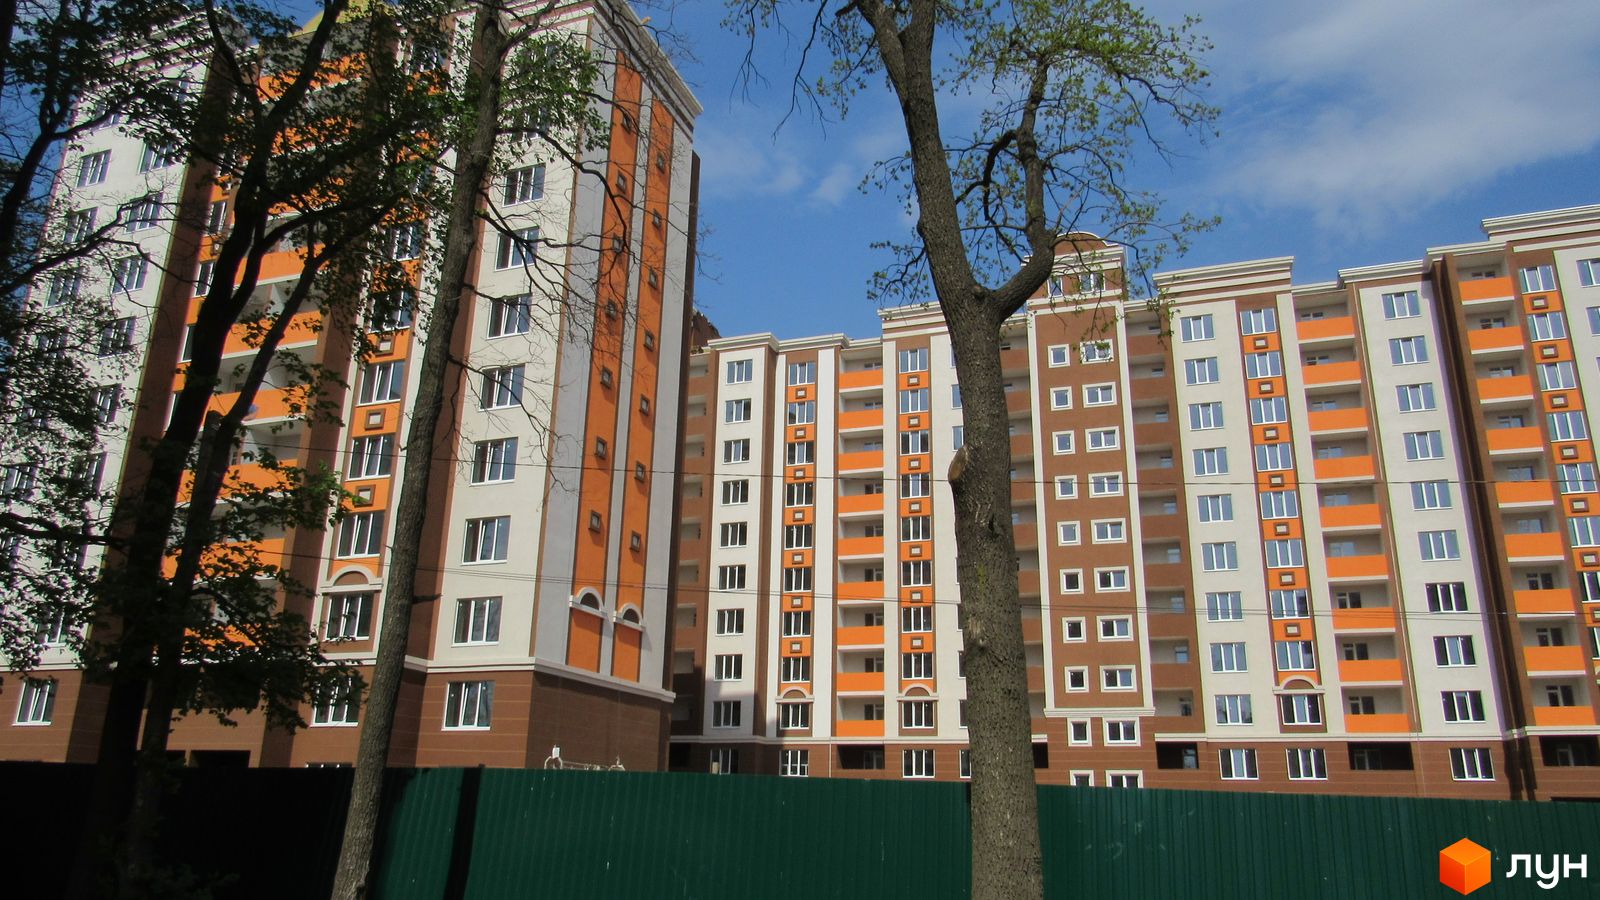 Моніторинг будівництва ЖК Петрівський квартал - Ракурс 8, квітень 2017